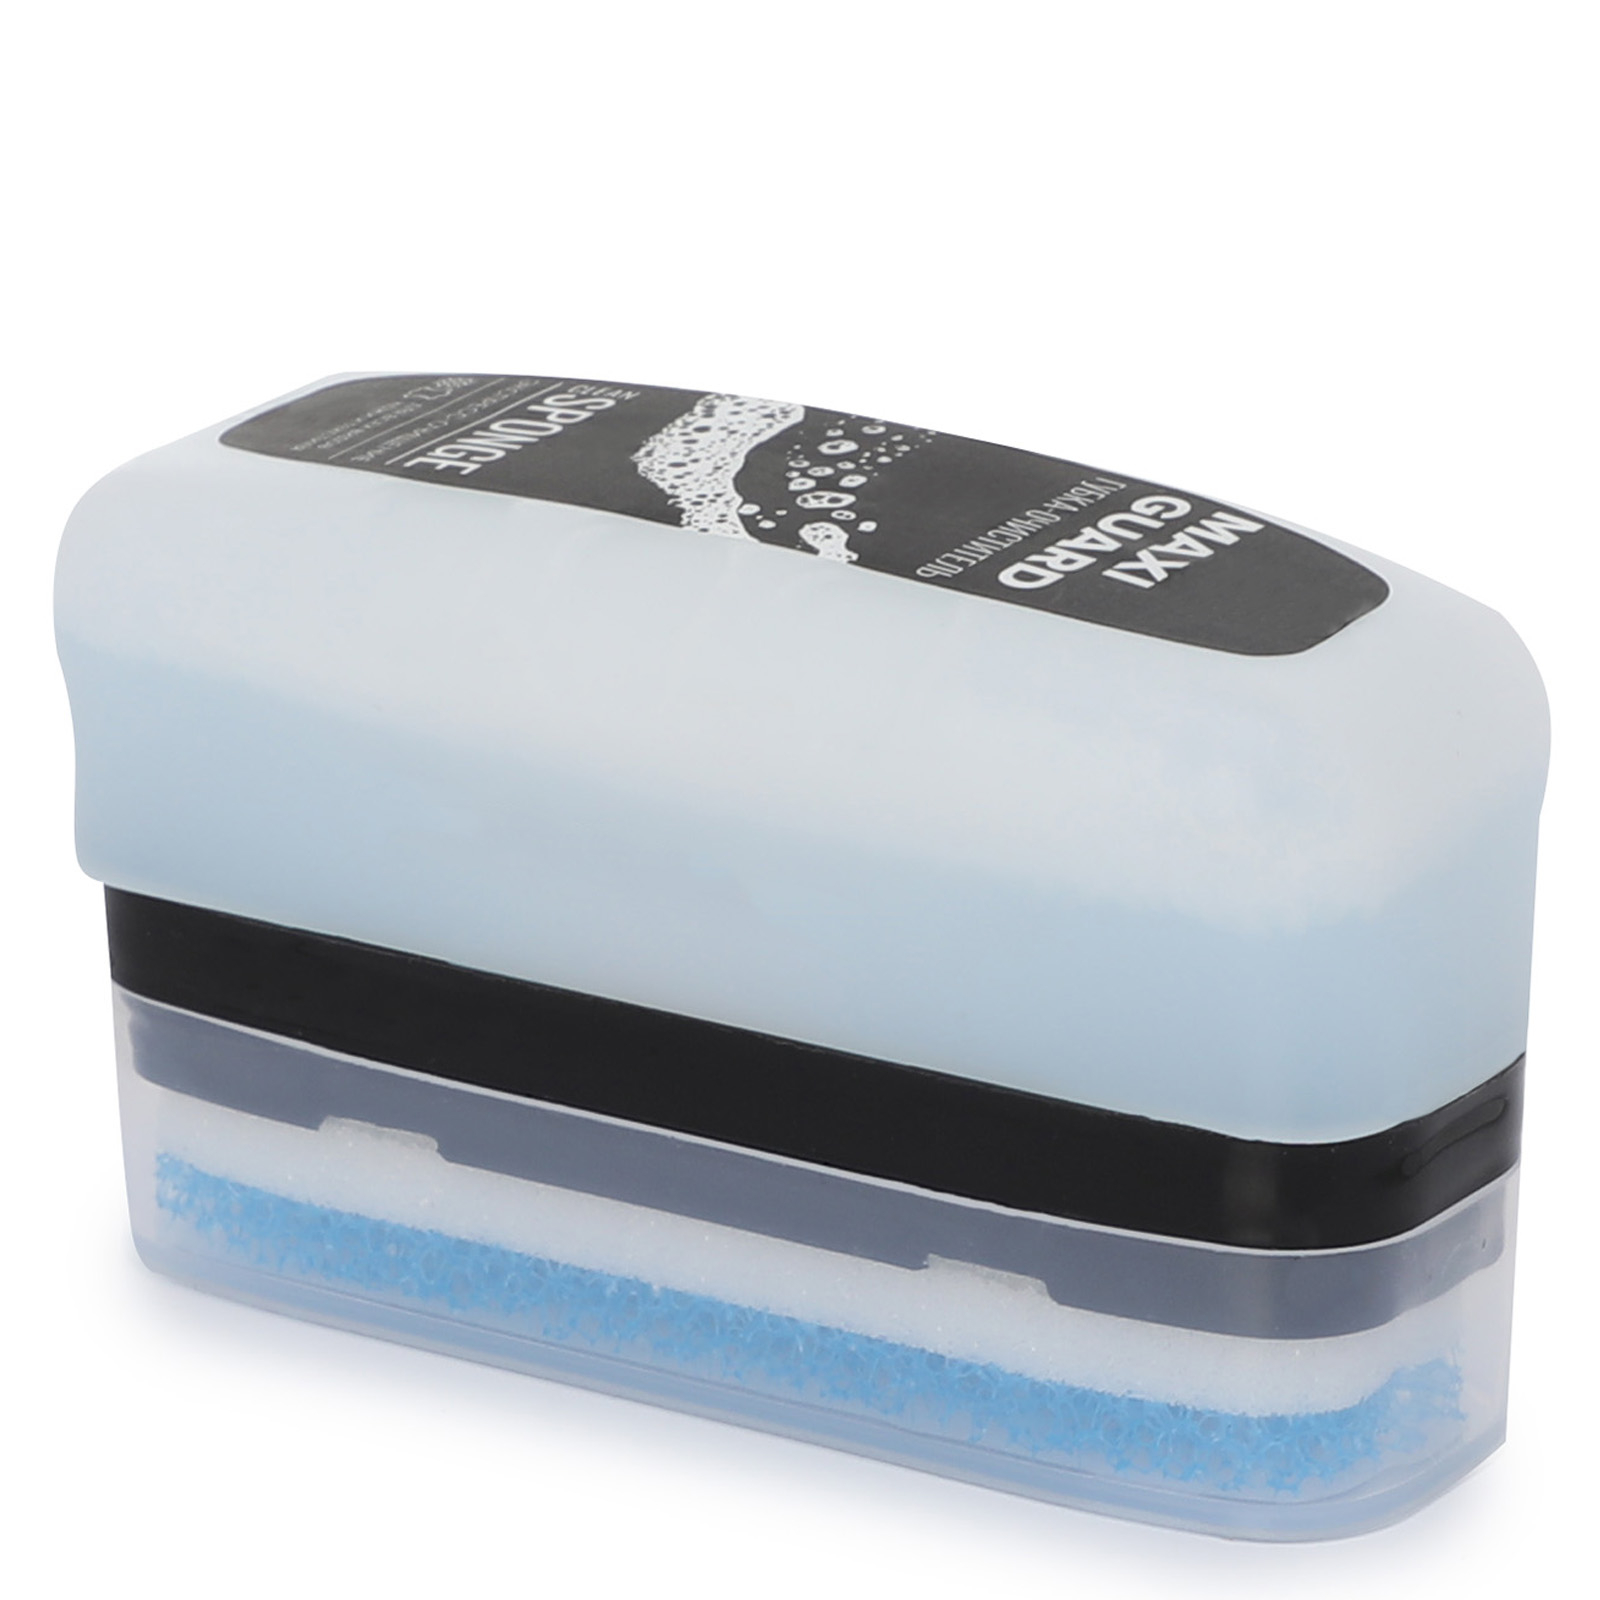 Губка-очиститель MaxiGuard Sponge Clean, бесцветный, 75 мл губка двусторонняя sponge ultrafine 98 120 13mm 10шт синяя р800